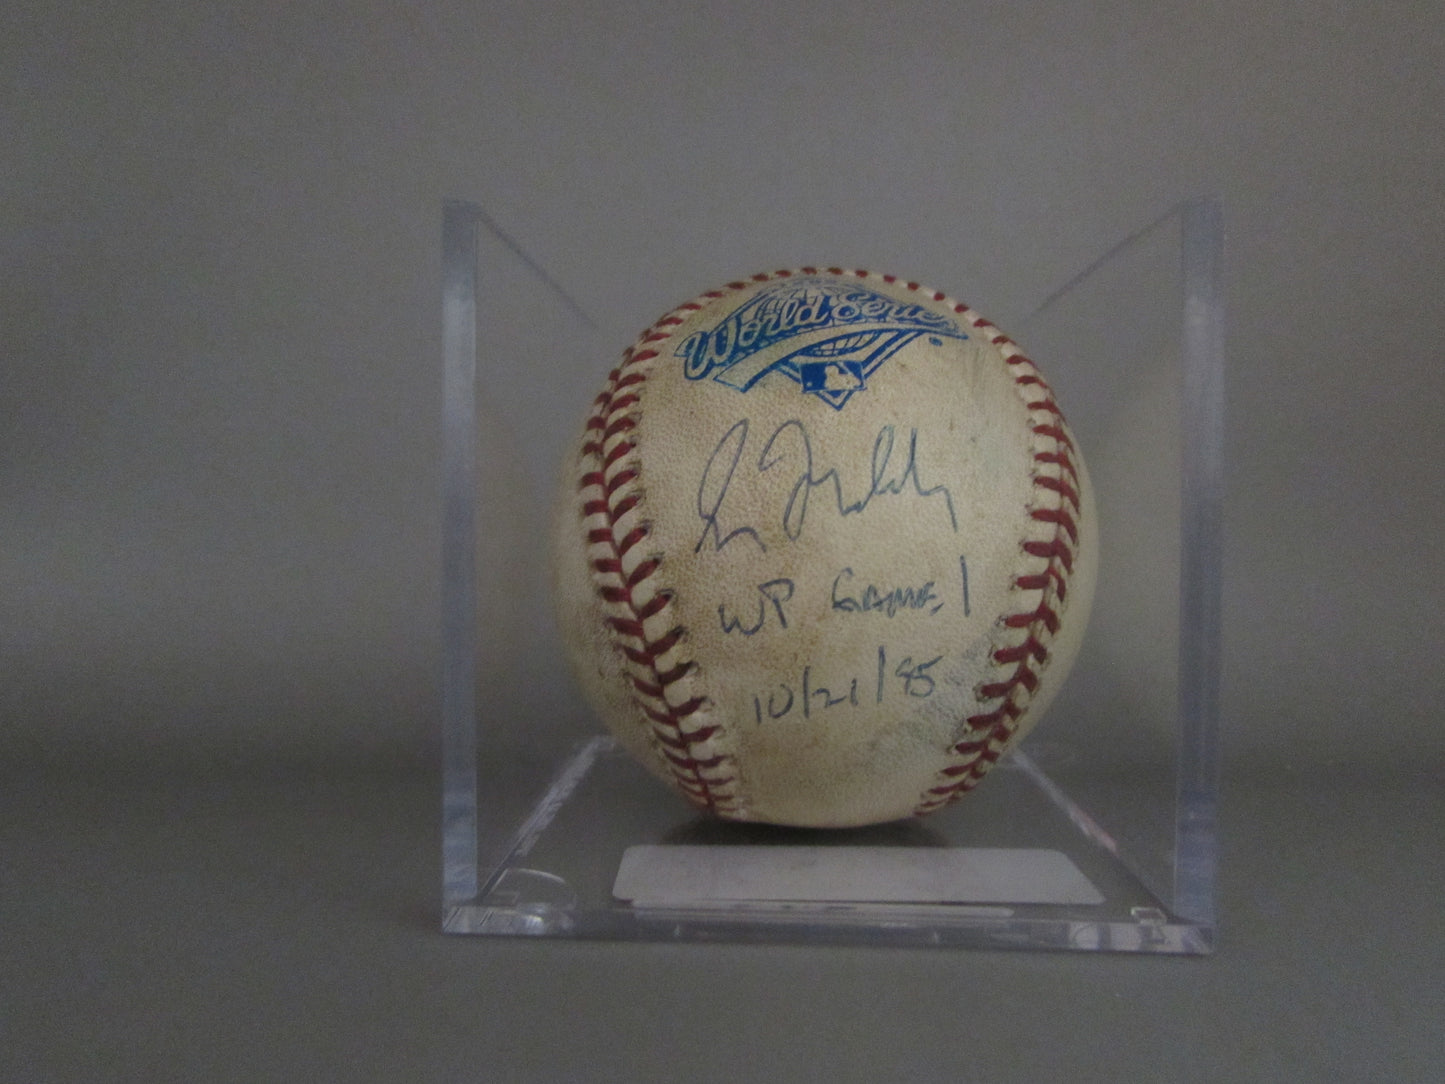 Greg Maddux signed baseball